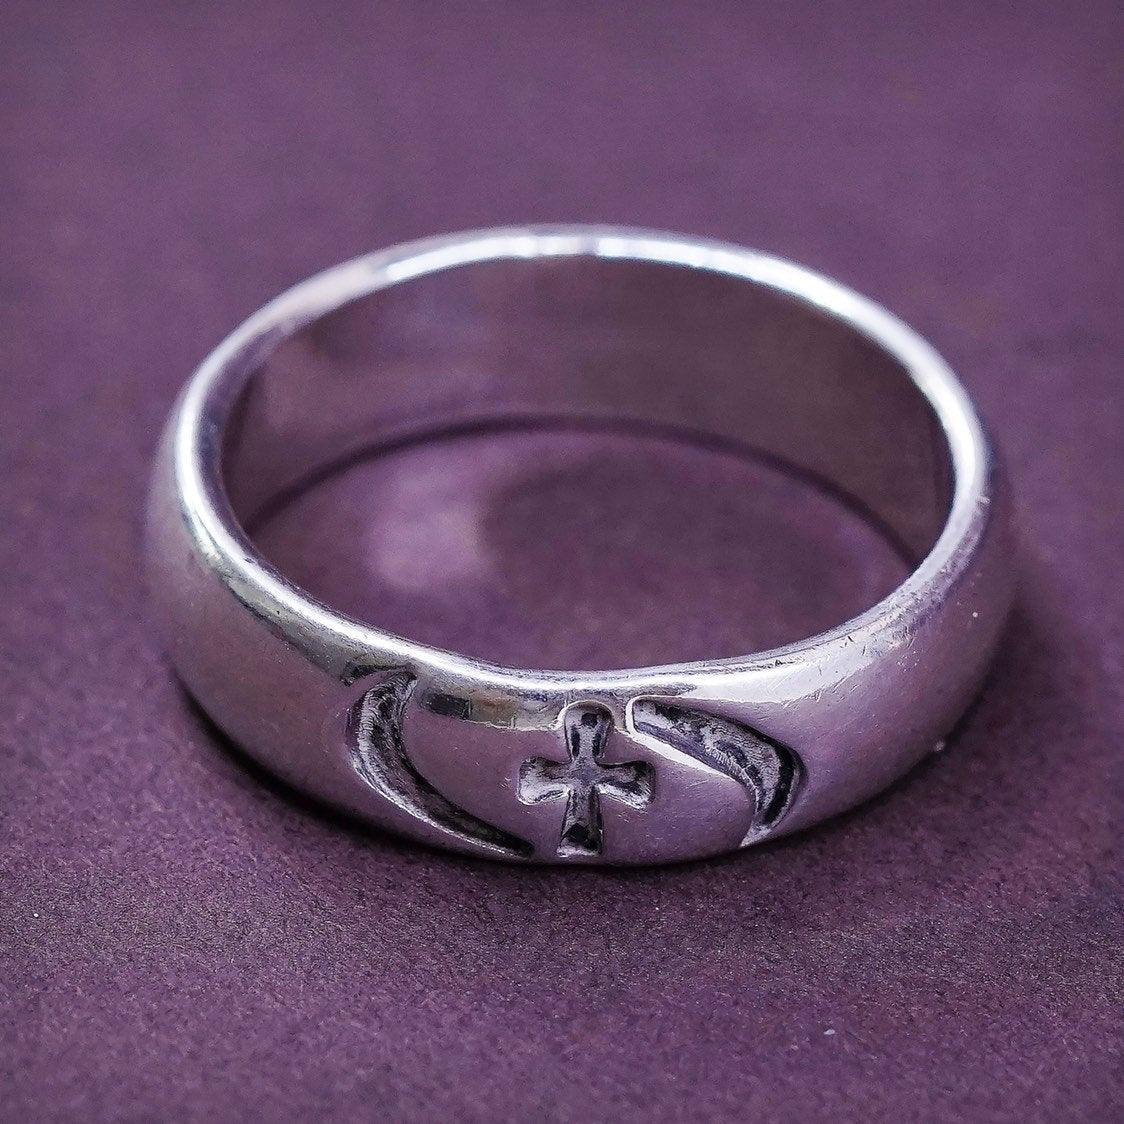 sz 8.25, vtg BSD Sterling silver prayer ring, 925 band w/ "cross" engraved